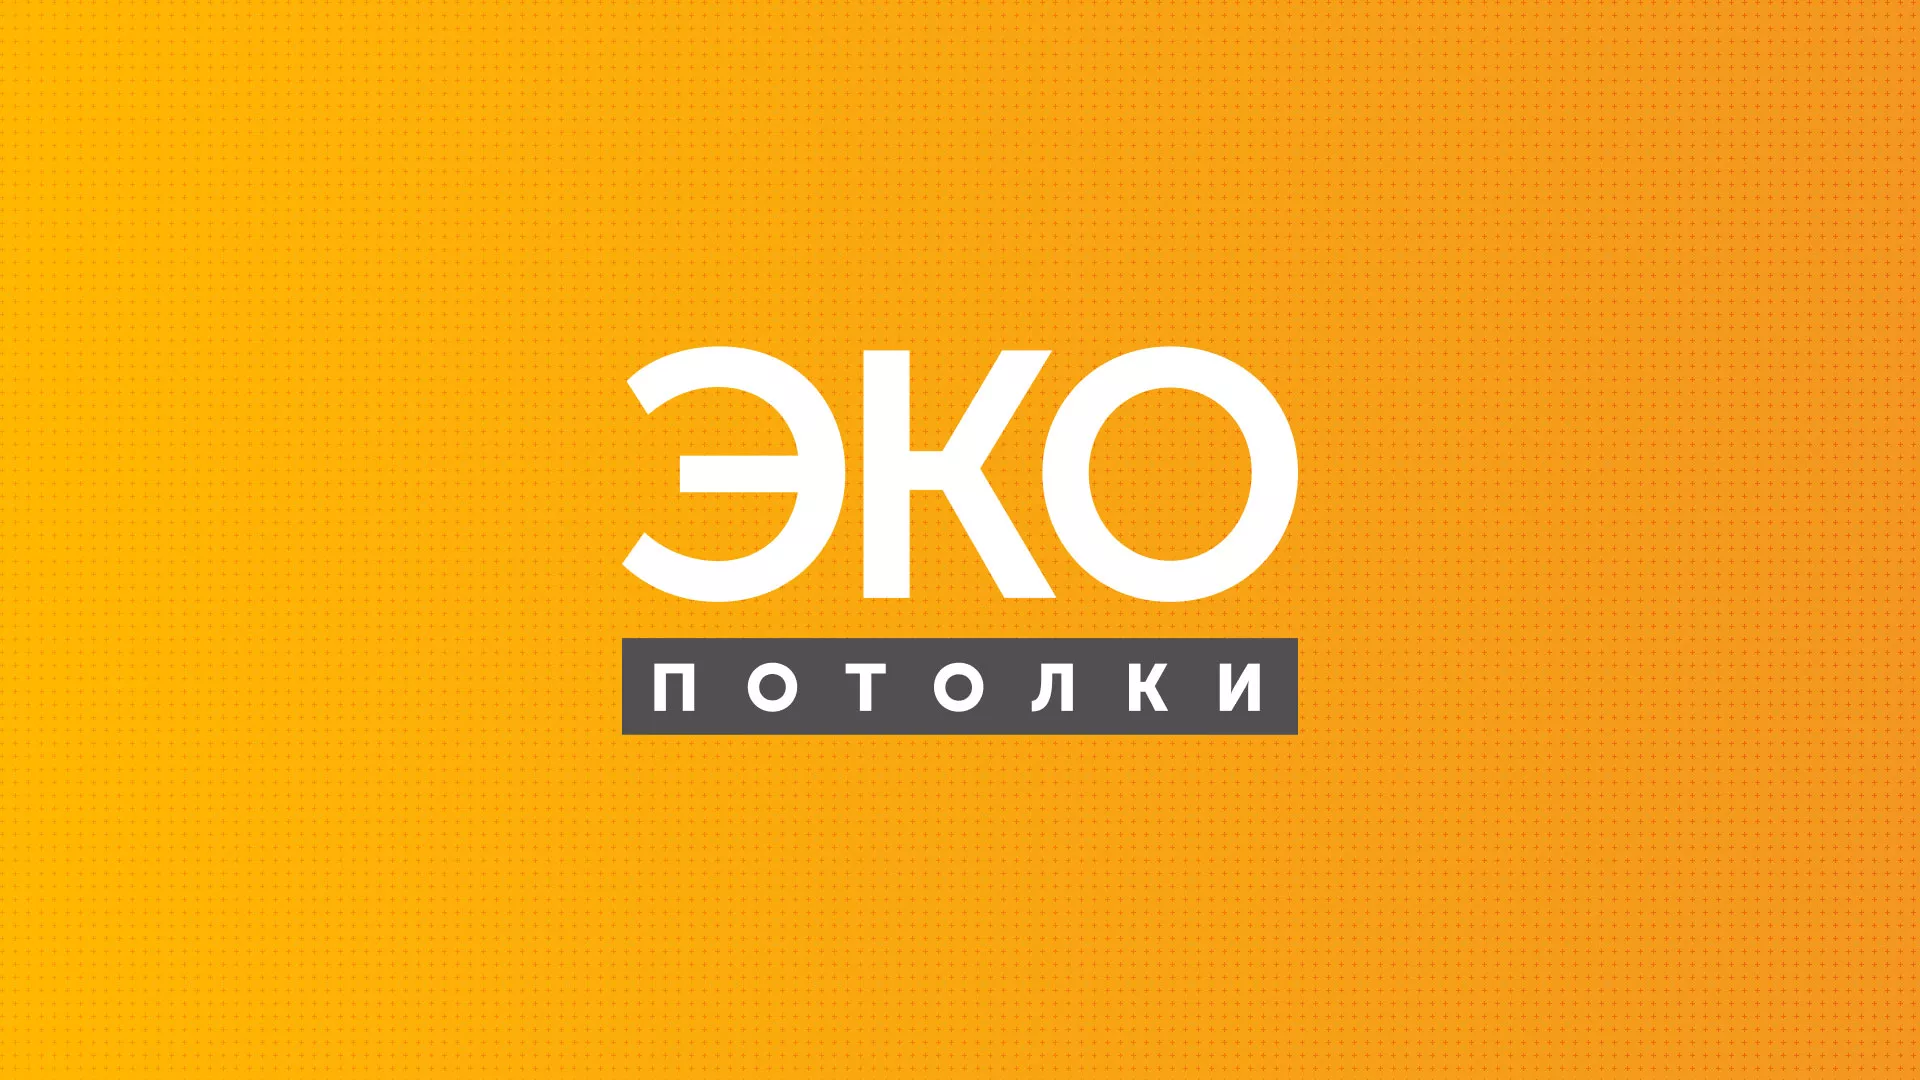 Разработка сайта по натяжным потолкам «Эко Потолки» в Володарске